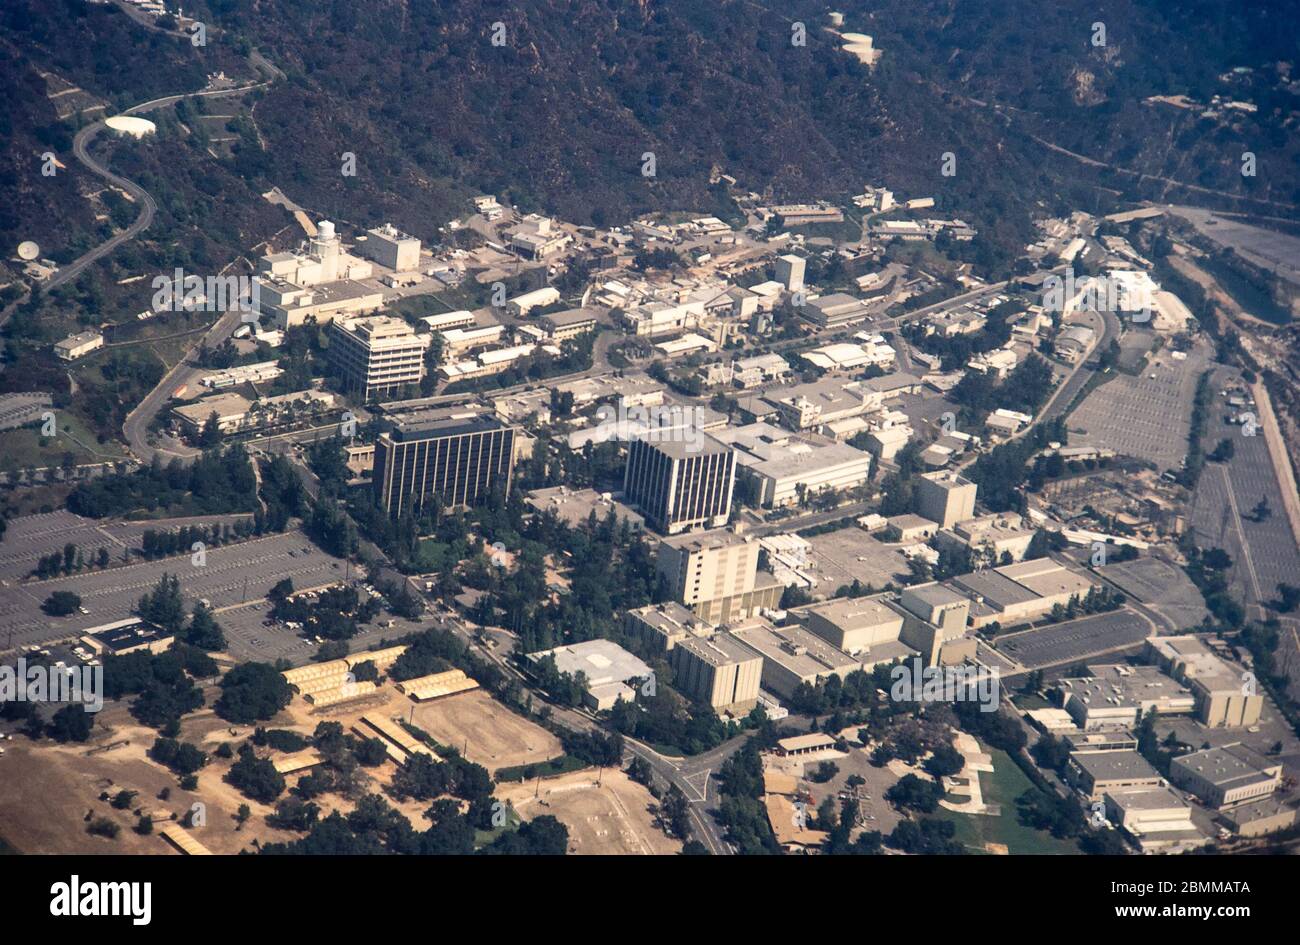 Pasadena, los Angeles, California, USA - Feb 1984: Vista aérea del Laboratorio de Propulsión a Chorro (JPL) en Pasadena, y sus alrededores. Película de 35 mm escaneada. Foto de stock